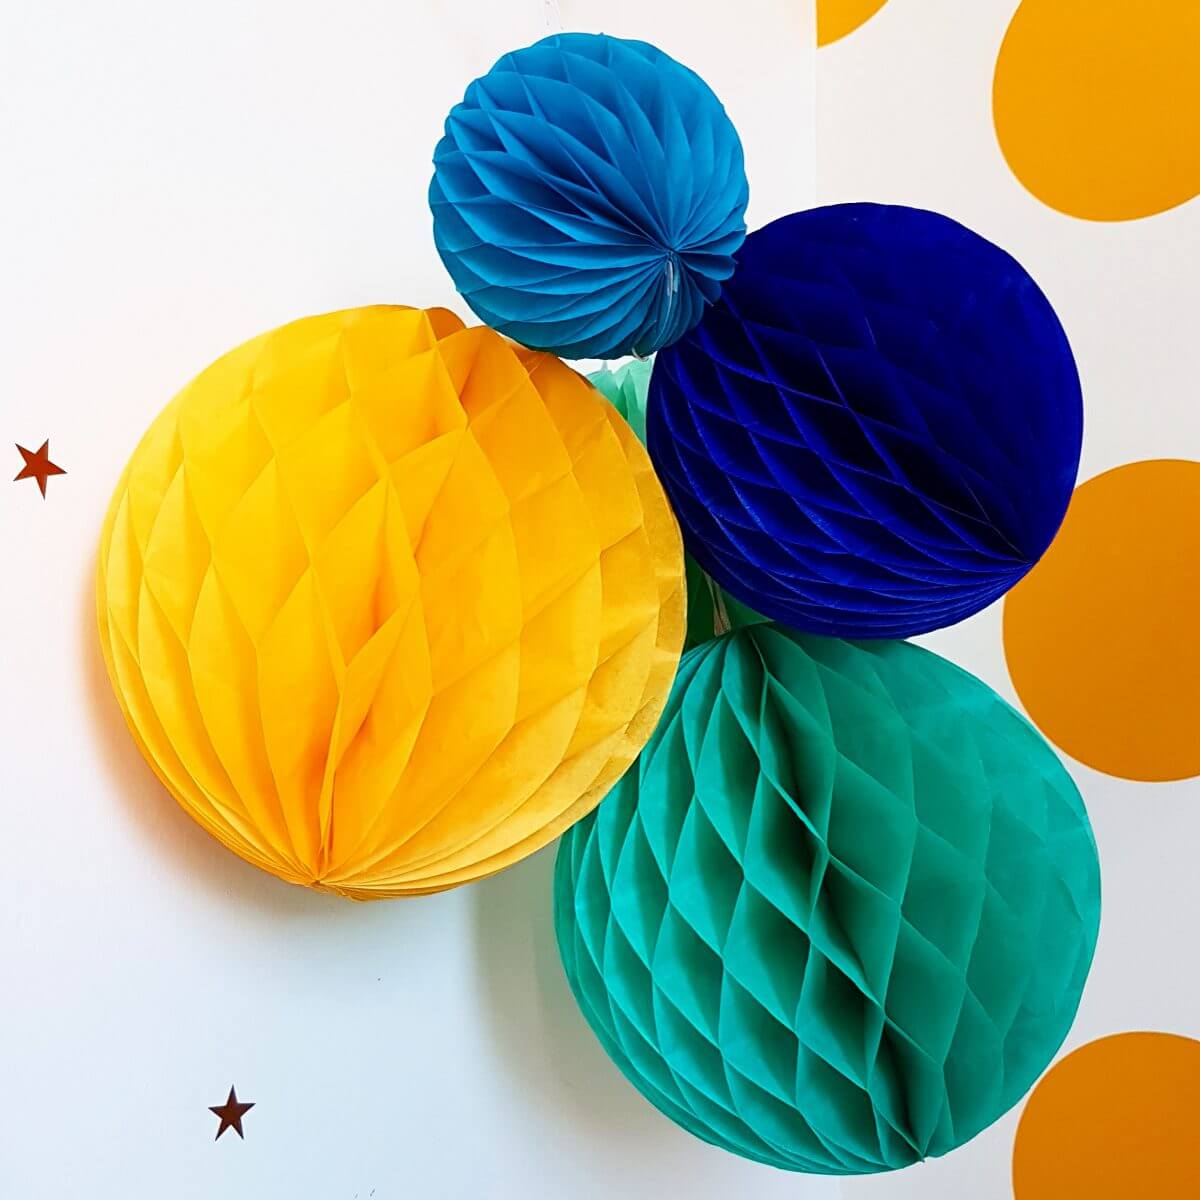 Raap bladeren op Versnel Ooit Milieuvriendelijk alternatief voor ballonnen: papieren honeycomb bollen  Leuk met kids